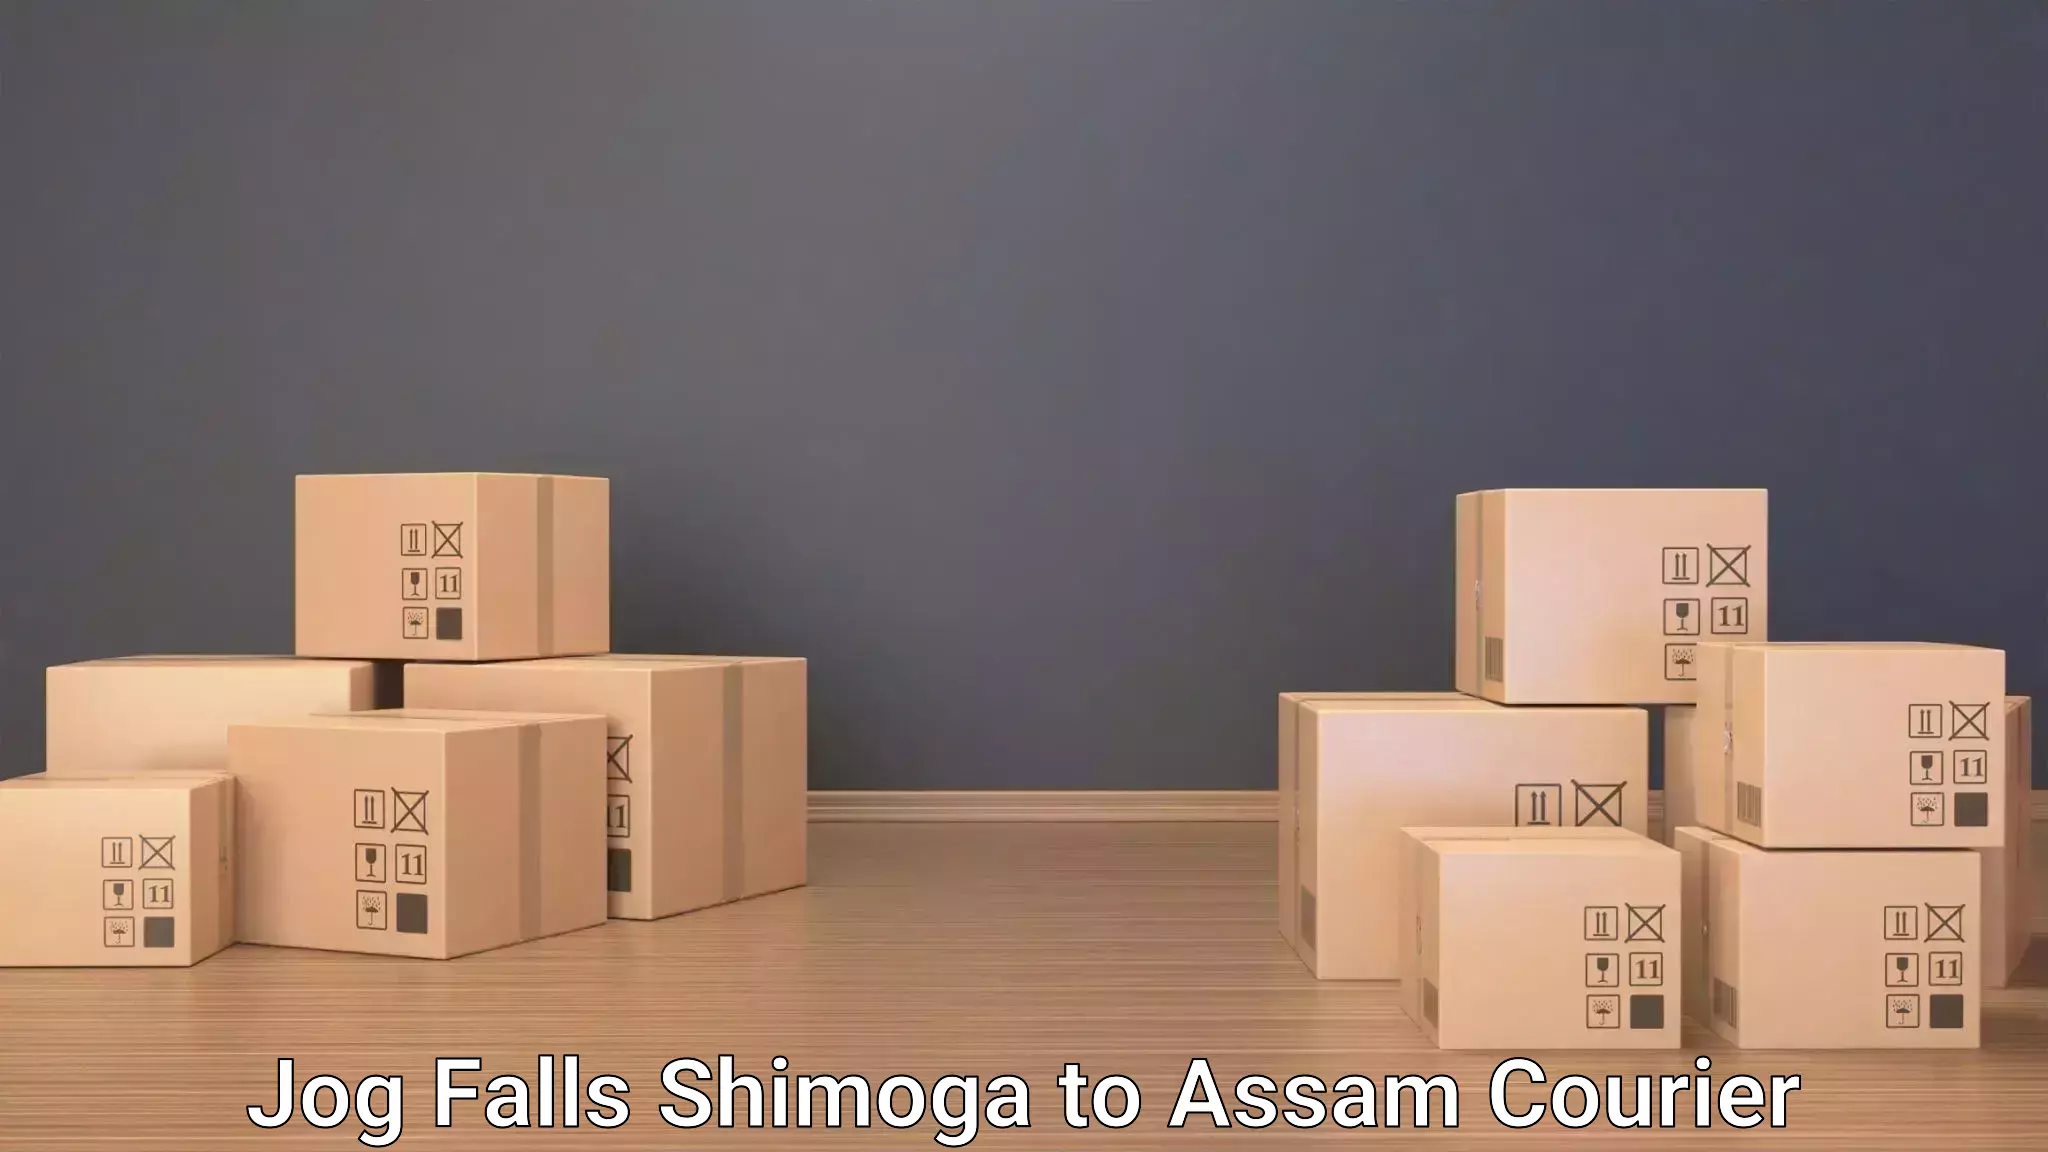 Luggage transport deals in Jog Falls Shimoga to Assam